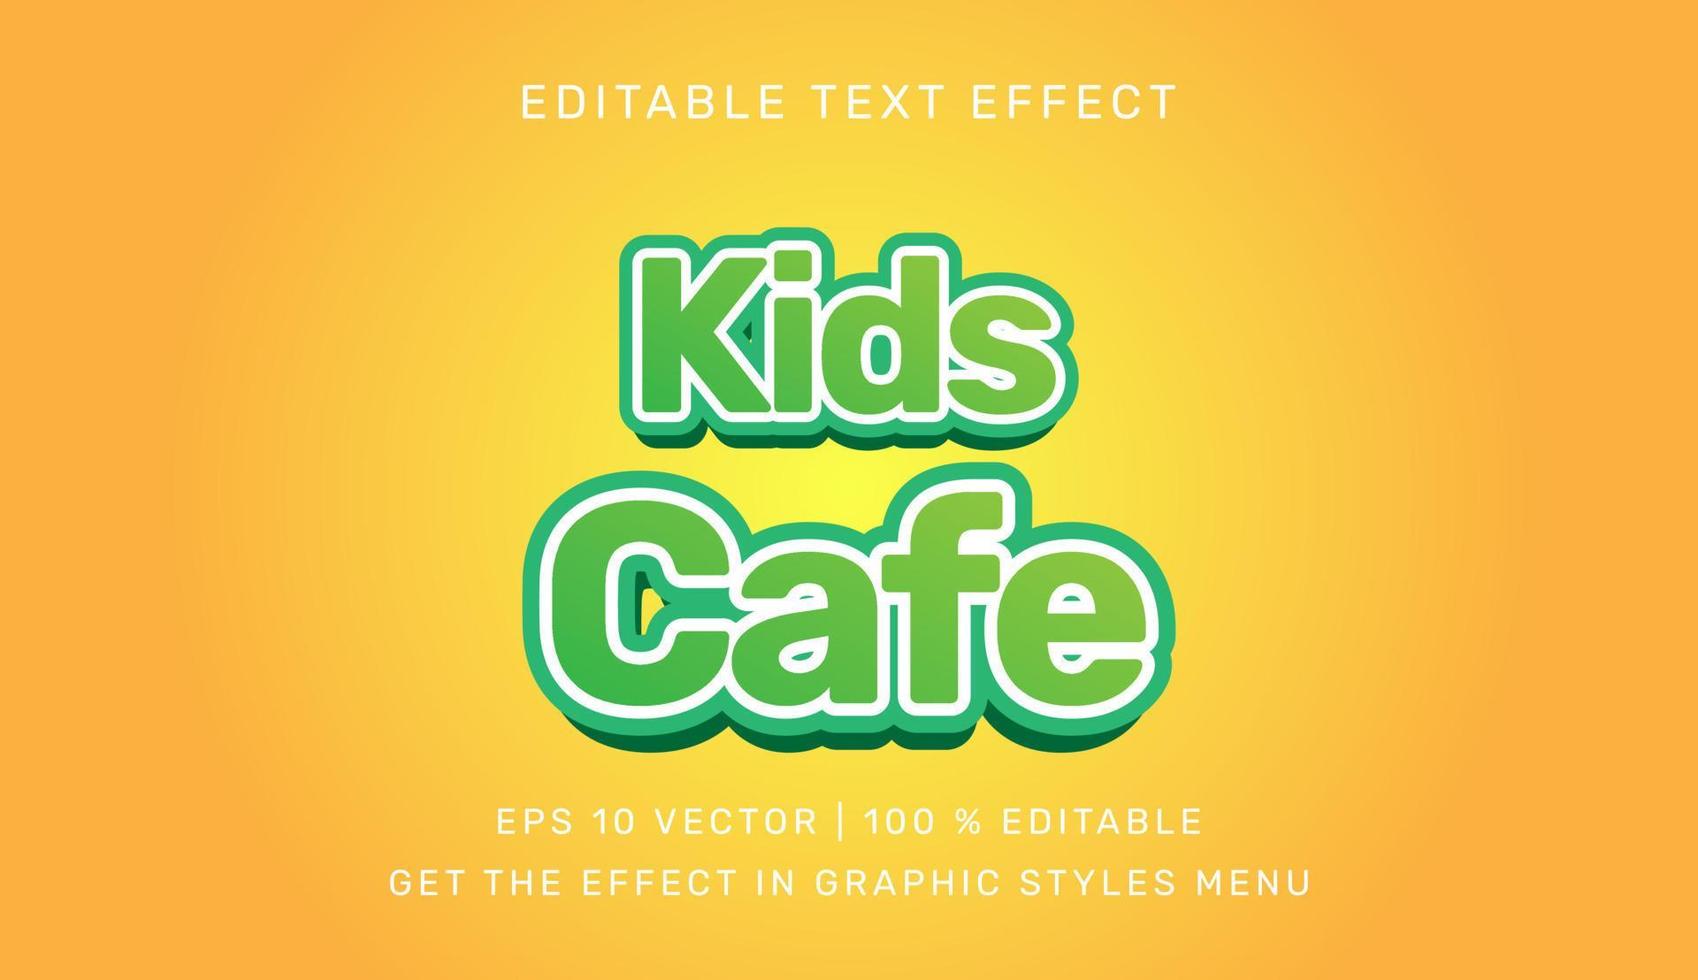 vetor ilustração do crianças cafeteria 3d editável texto efeito modelo